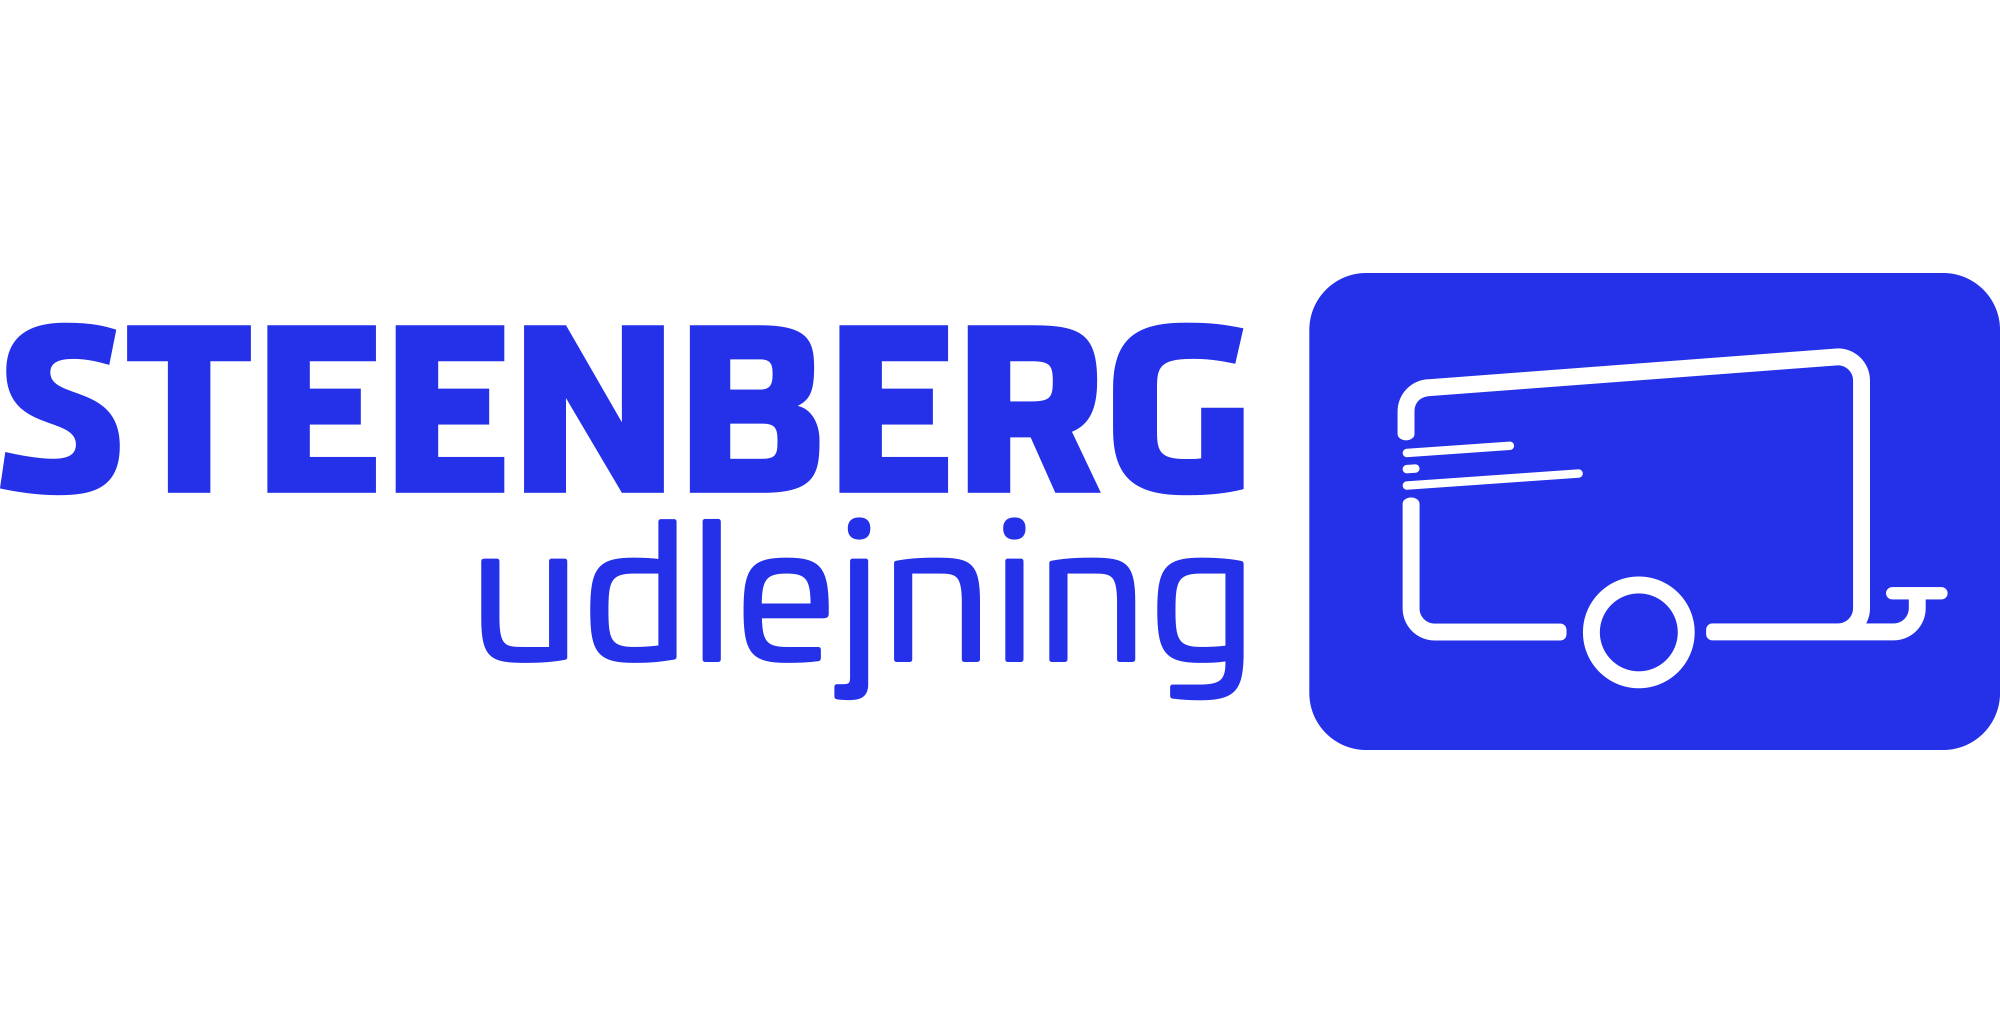 Steenberg Udlejning